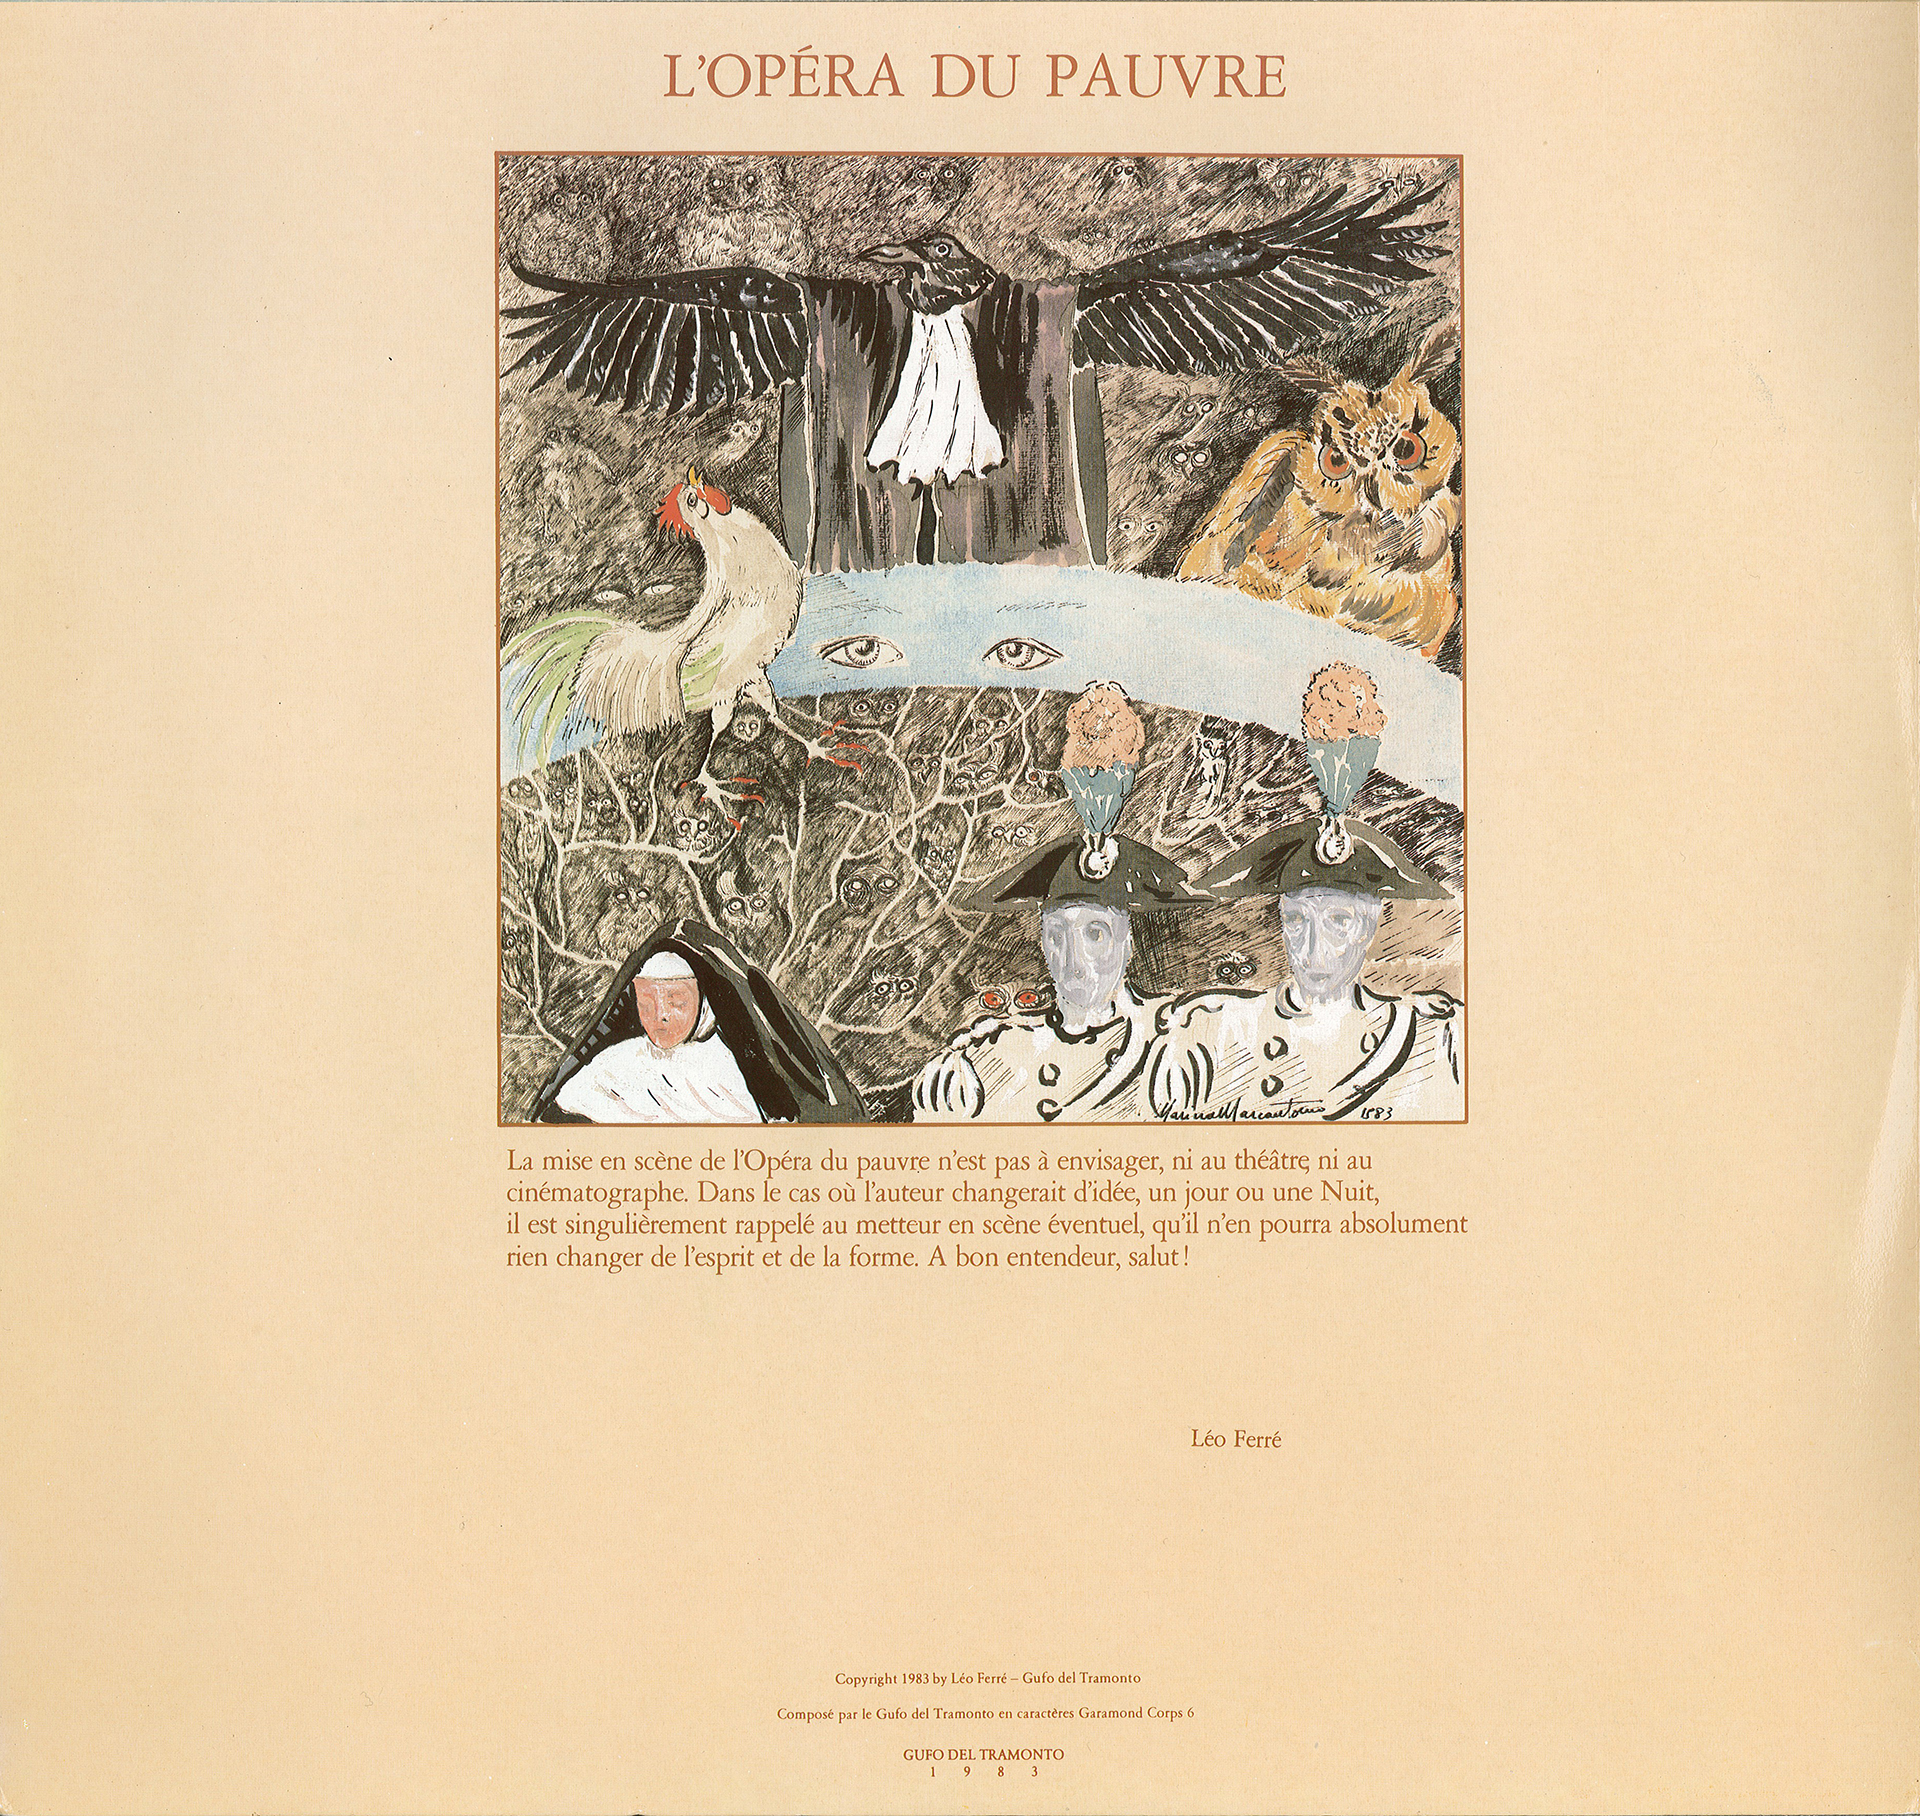 Léo Ferré - L'opéra du pauvre, RCA PL 70035